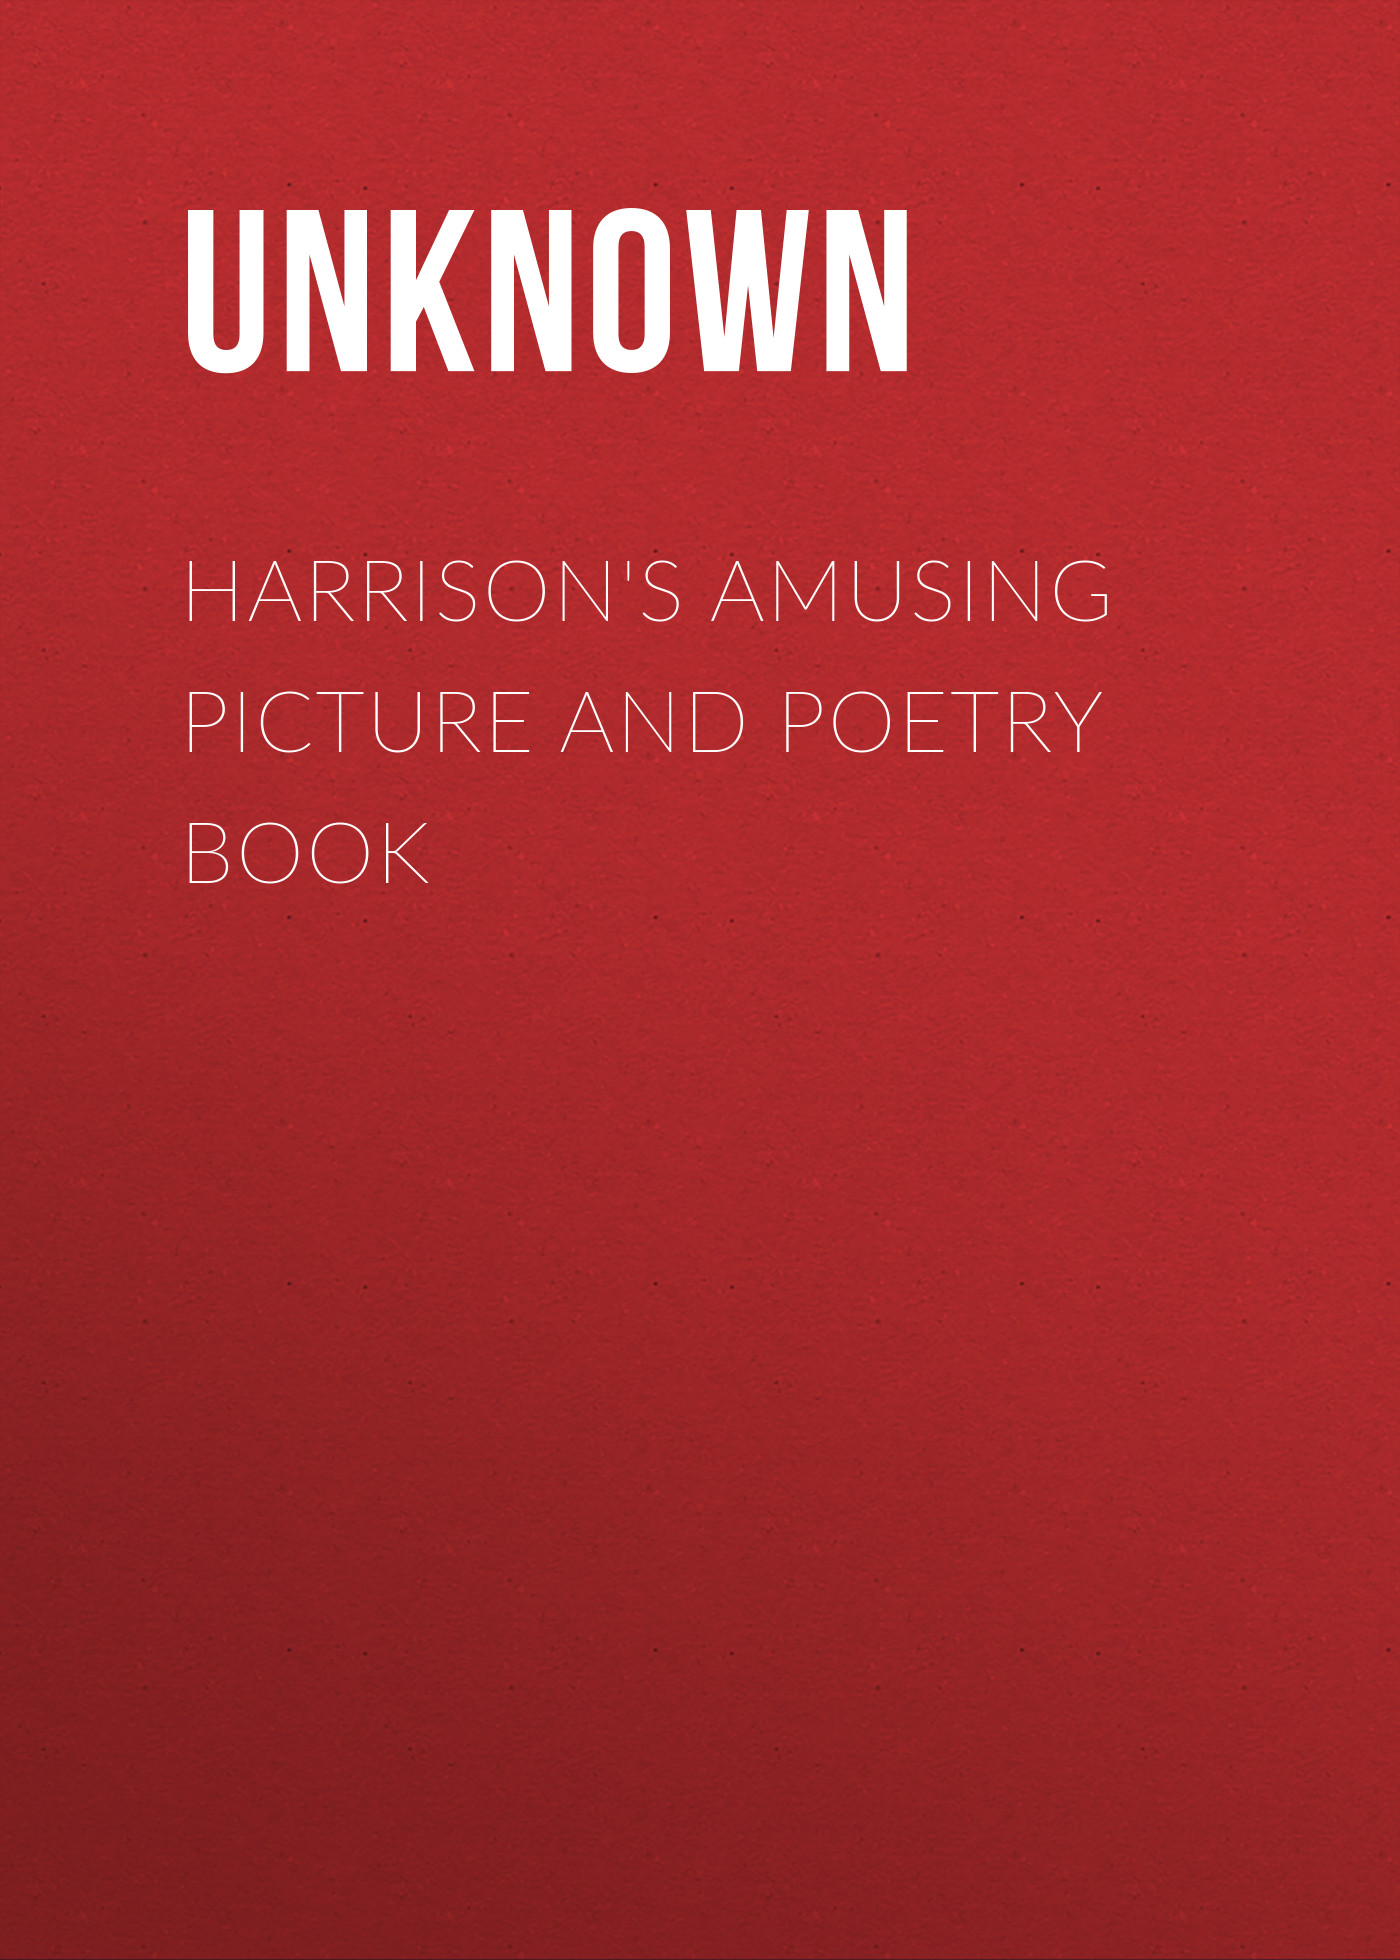 Книга Harrison's Amusing Picture and Poetry Book из серии , созданная  Unknown, может относится к жанру Зарубежная классика, Зарубежная старинная литература. Стоимость электронной книги Harrison's Amusing Picture and Poetry Book с идентификатором 35489327 составляет 0 руб.